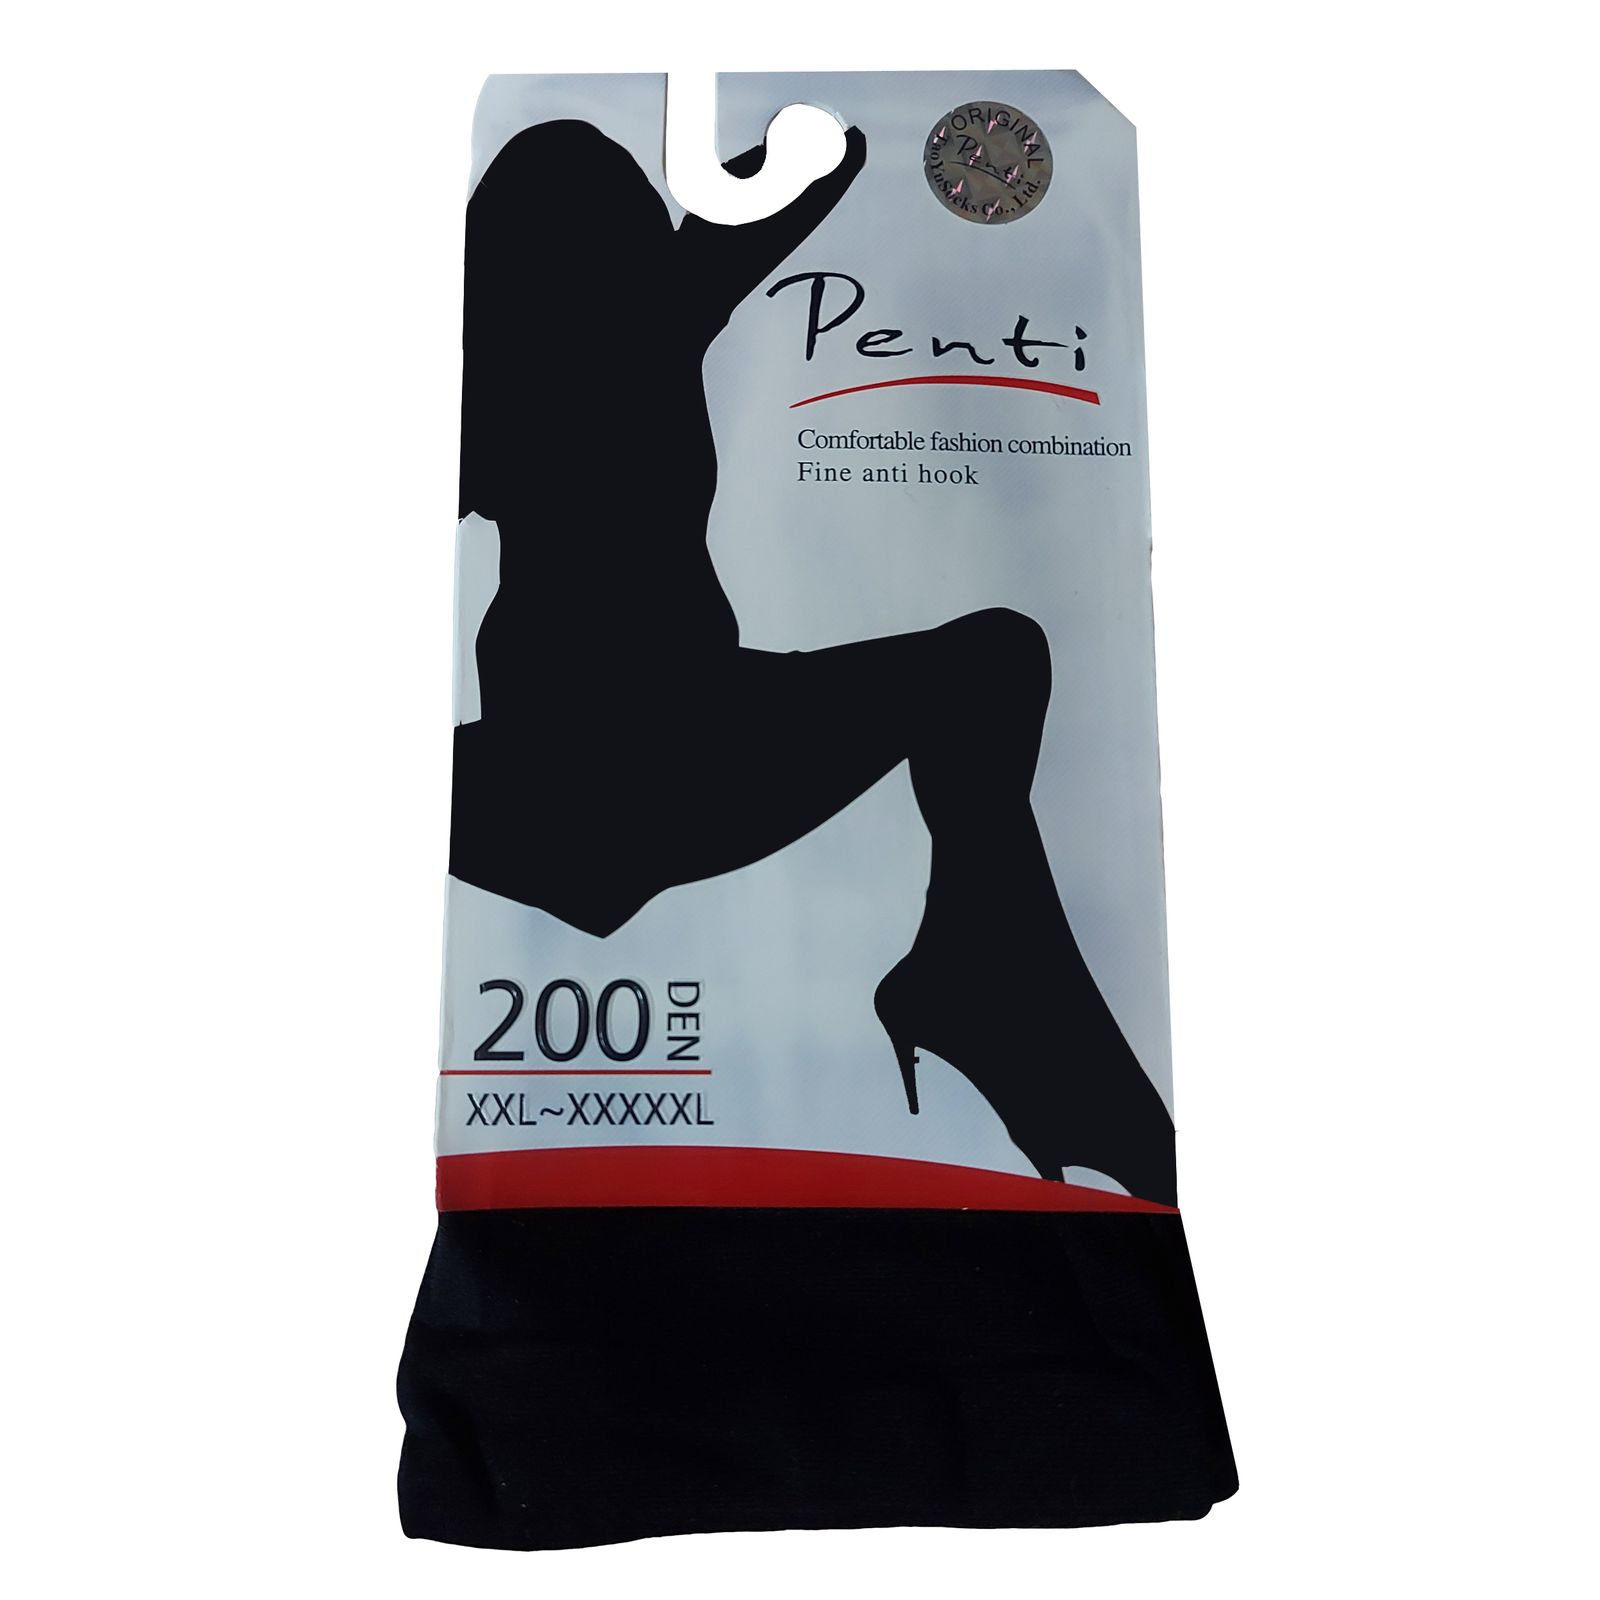 ساق شلواری زنانه پِنتی مدل DEN200 رنگ مشکی -  - 3